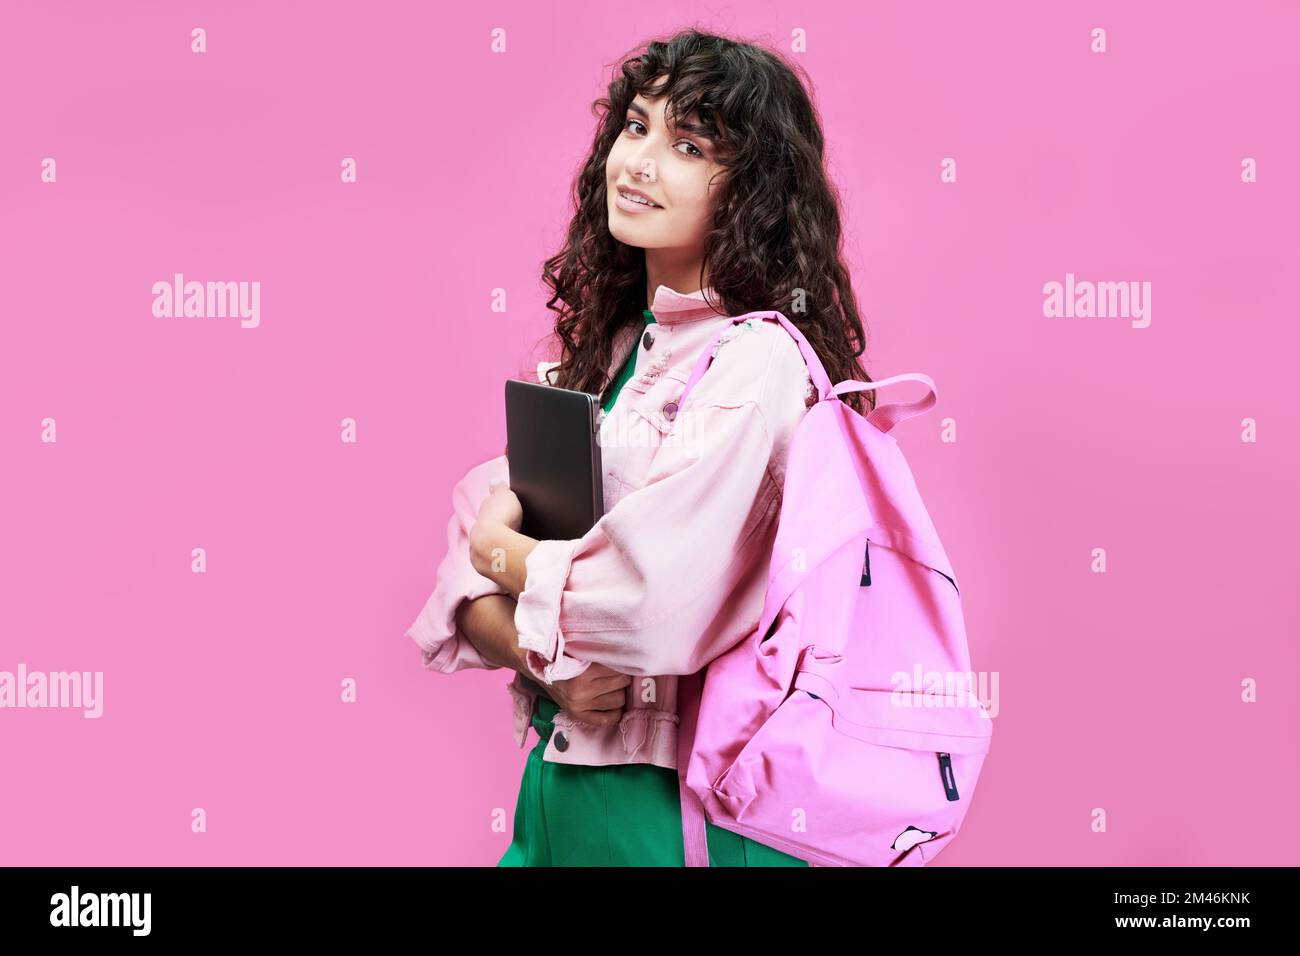 Une femme ingénieuse élève d'université ou d'école secondaire portant une veste en denim debout devant l'appareil photo sur fond rose Banque D'Images